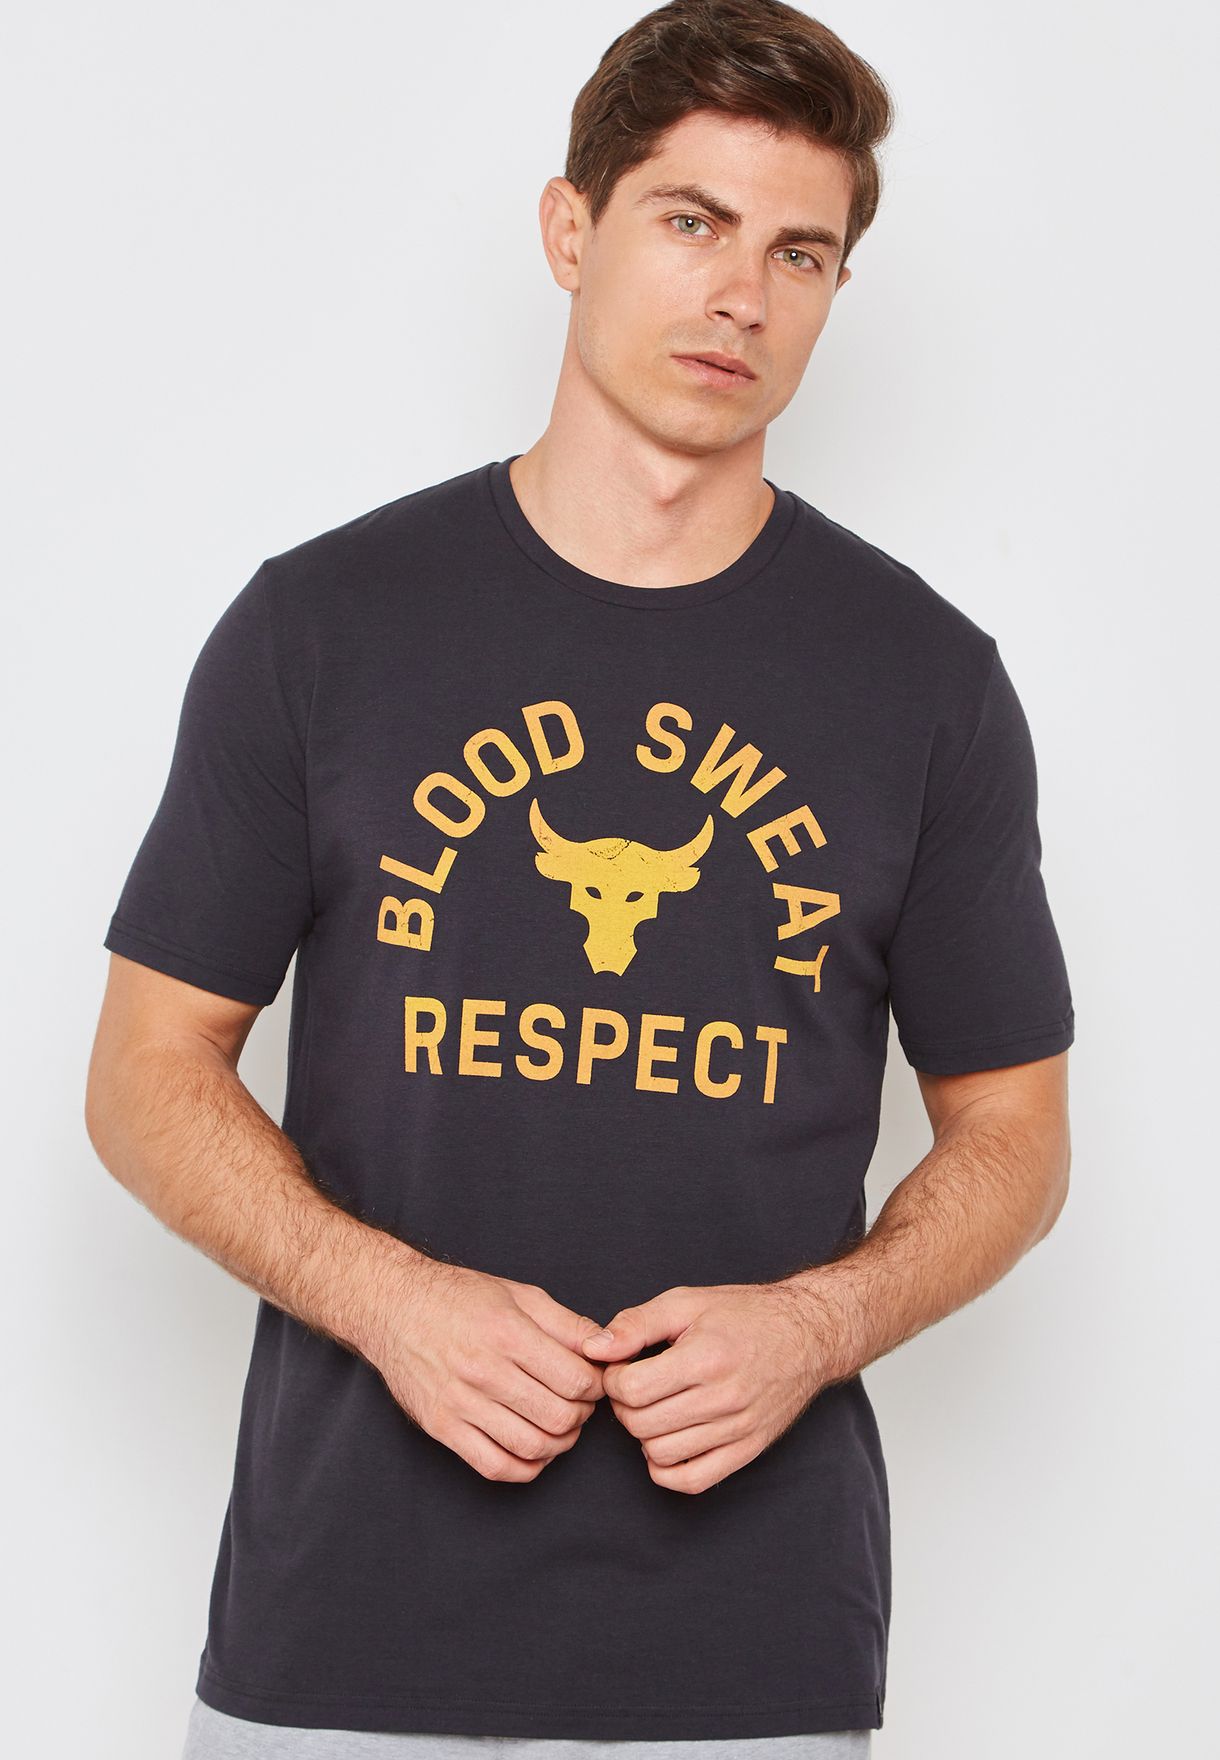 blood sweat respect shirt